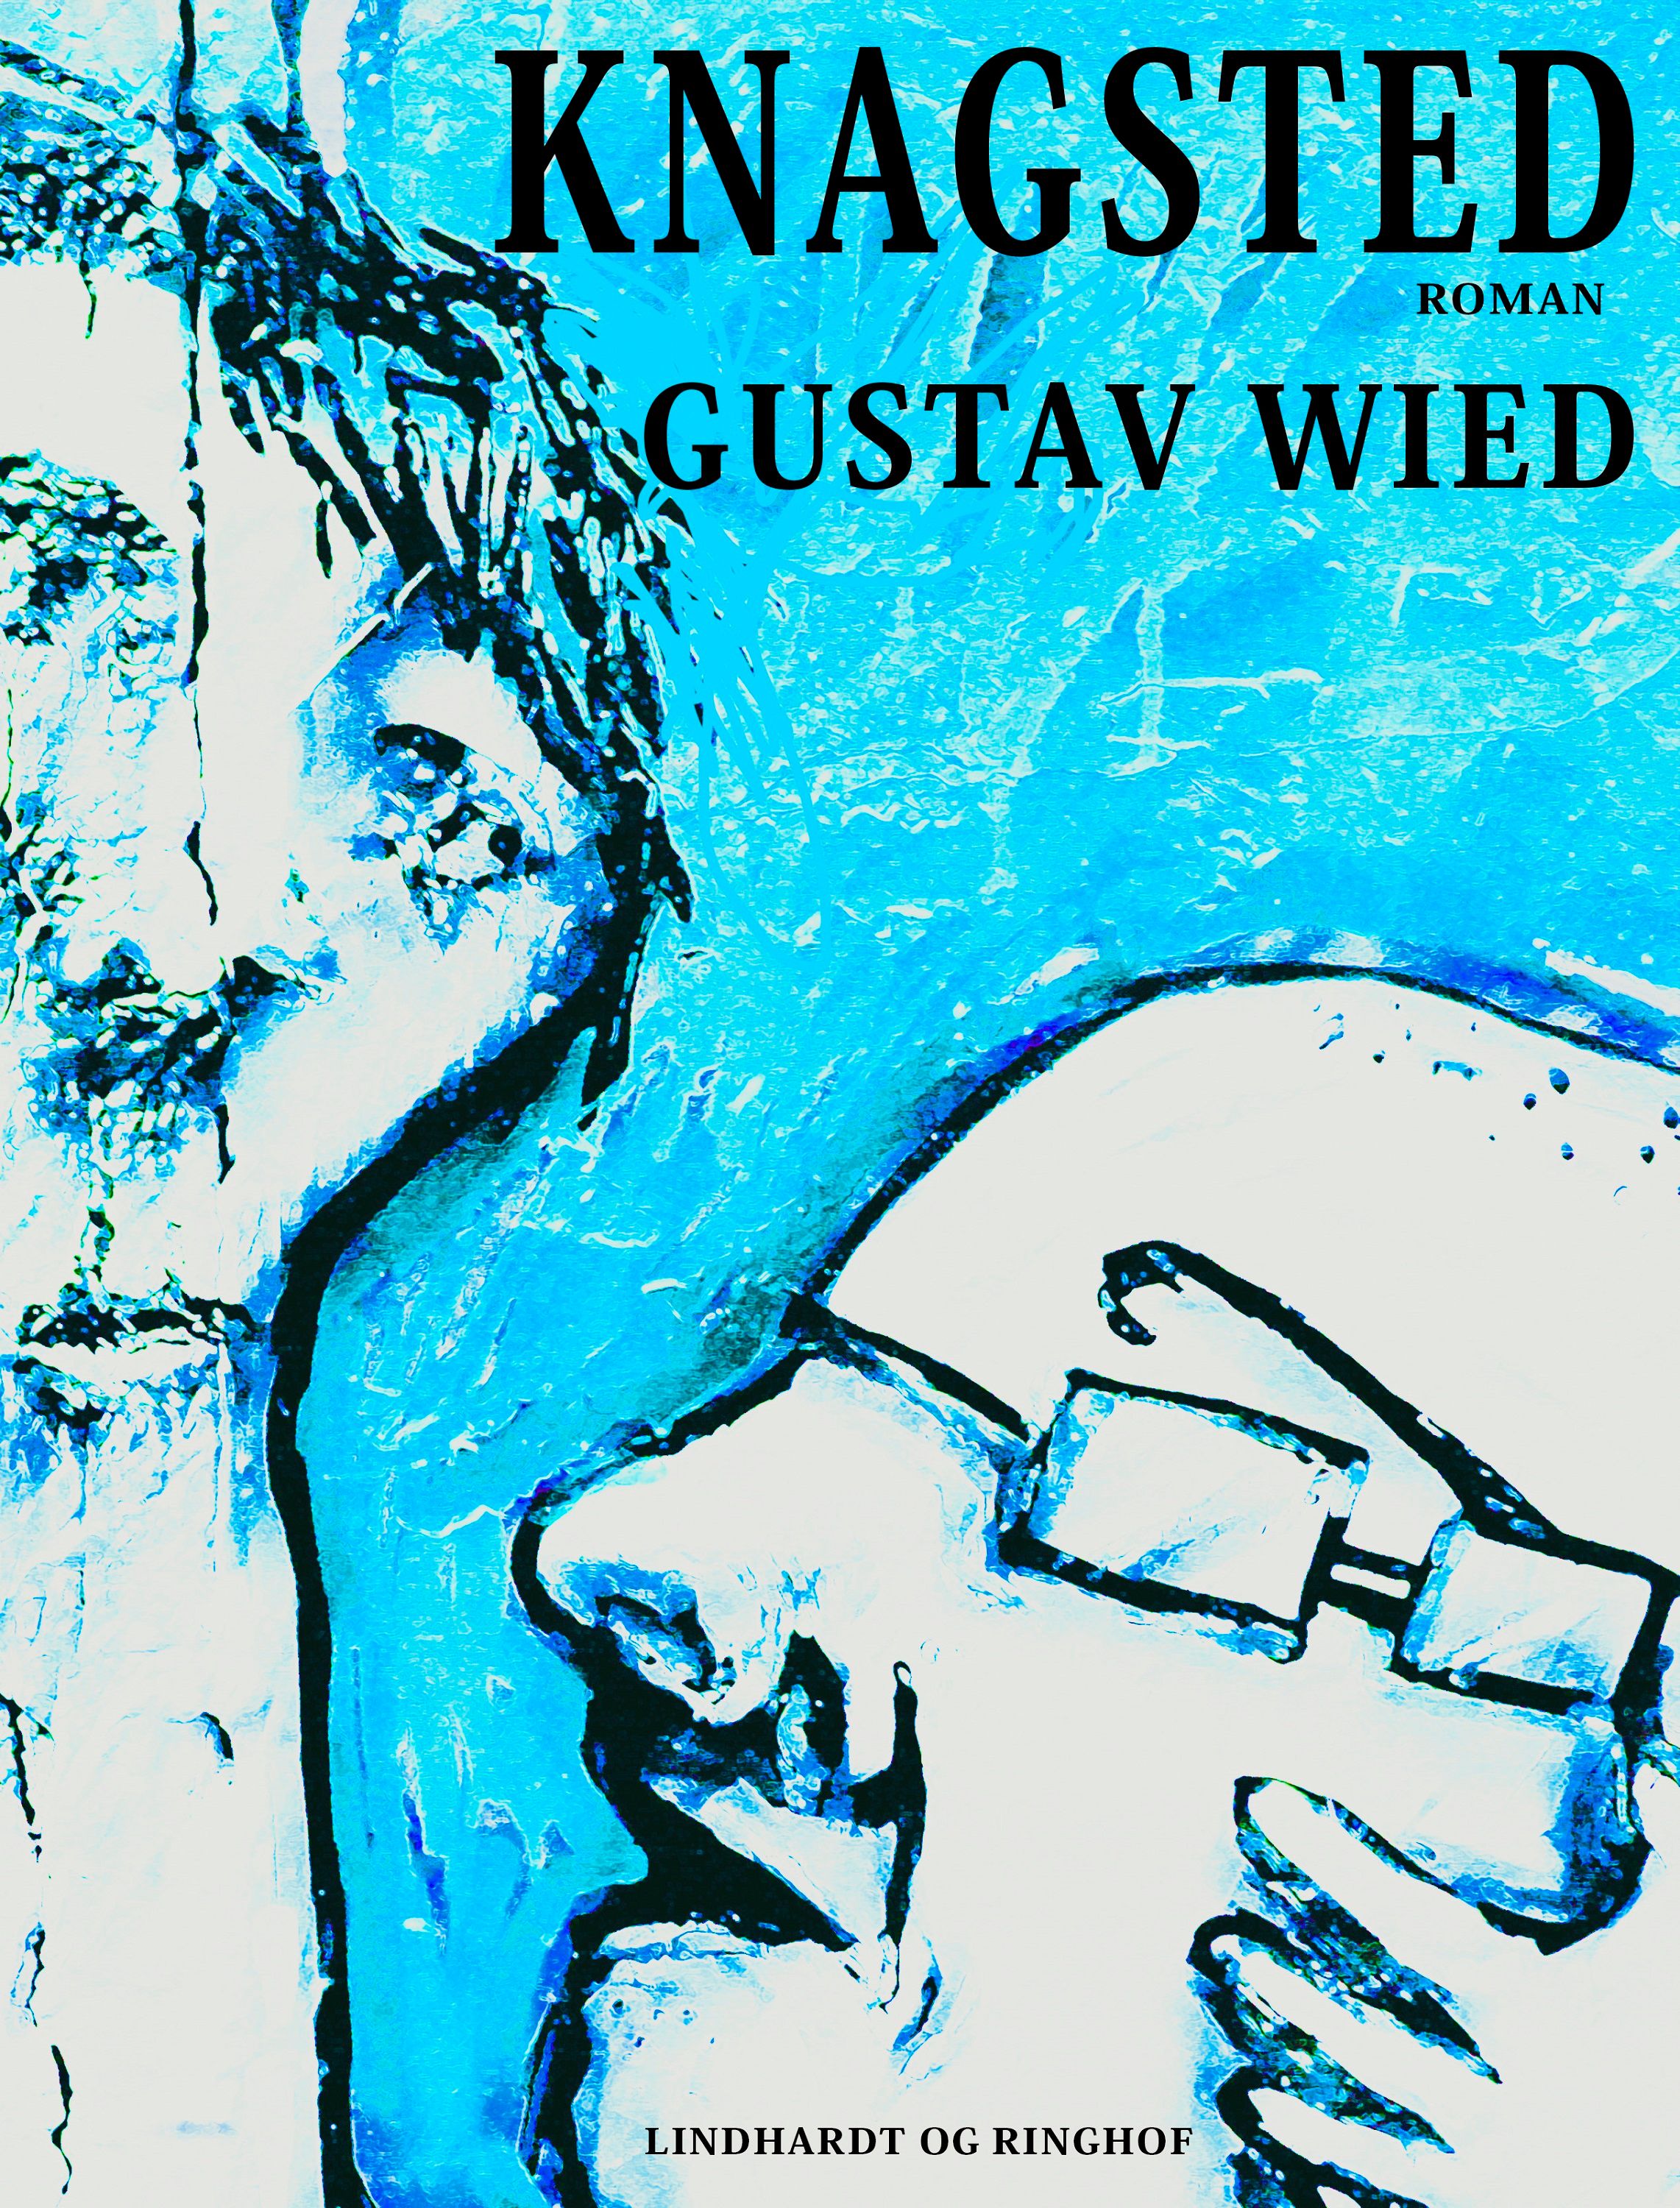 Knagsted, ljudbok av Gustav Wied